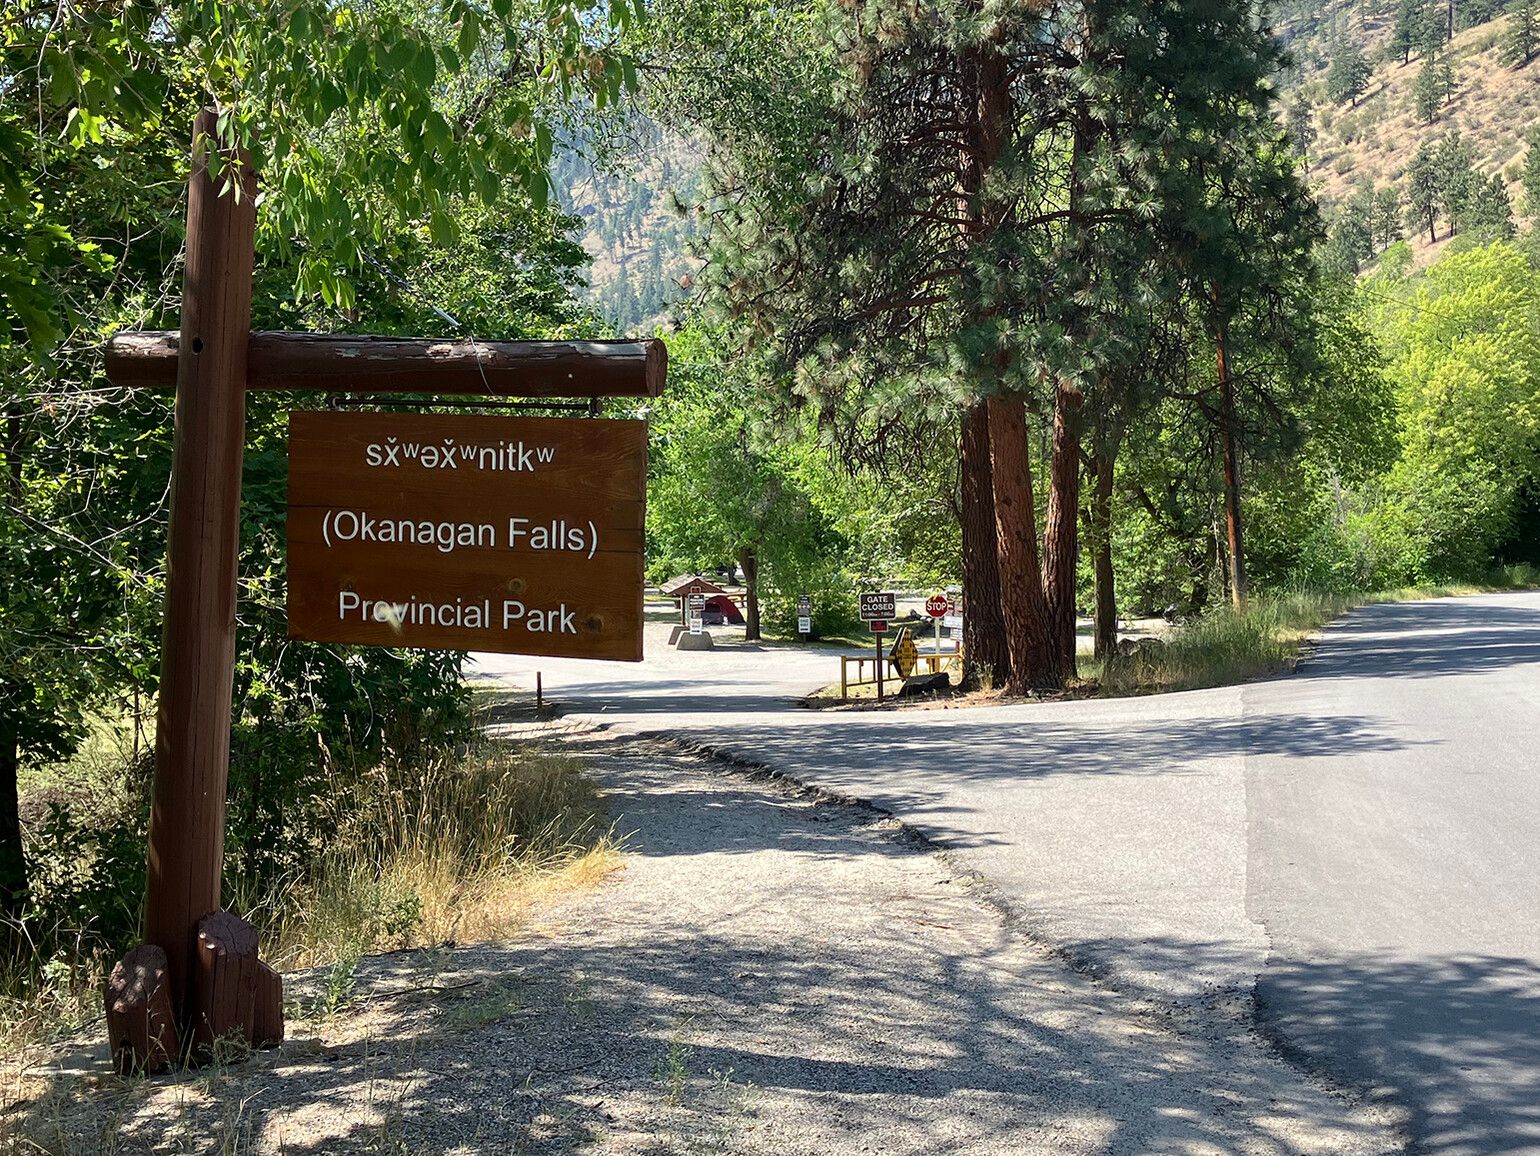 The campground entrance sign at sx̌ʷəx̌ʷnitkʷ Park (Okanagan Falls).